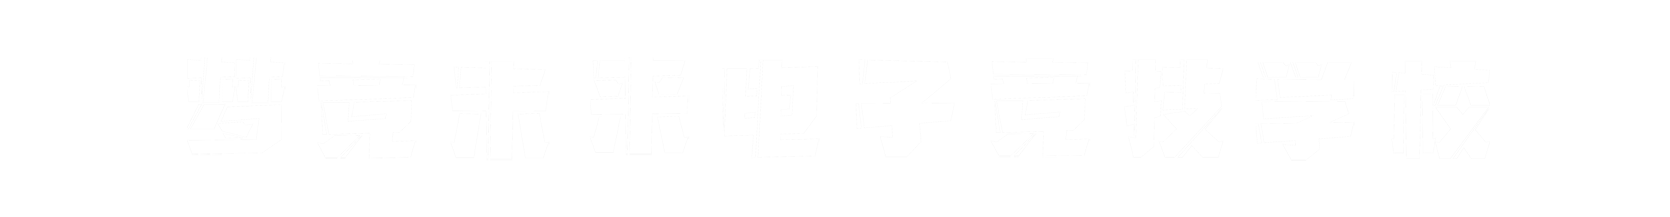 梦竞未来南阳banner字